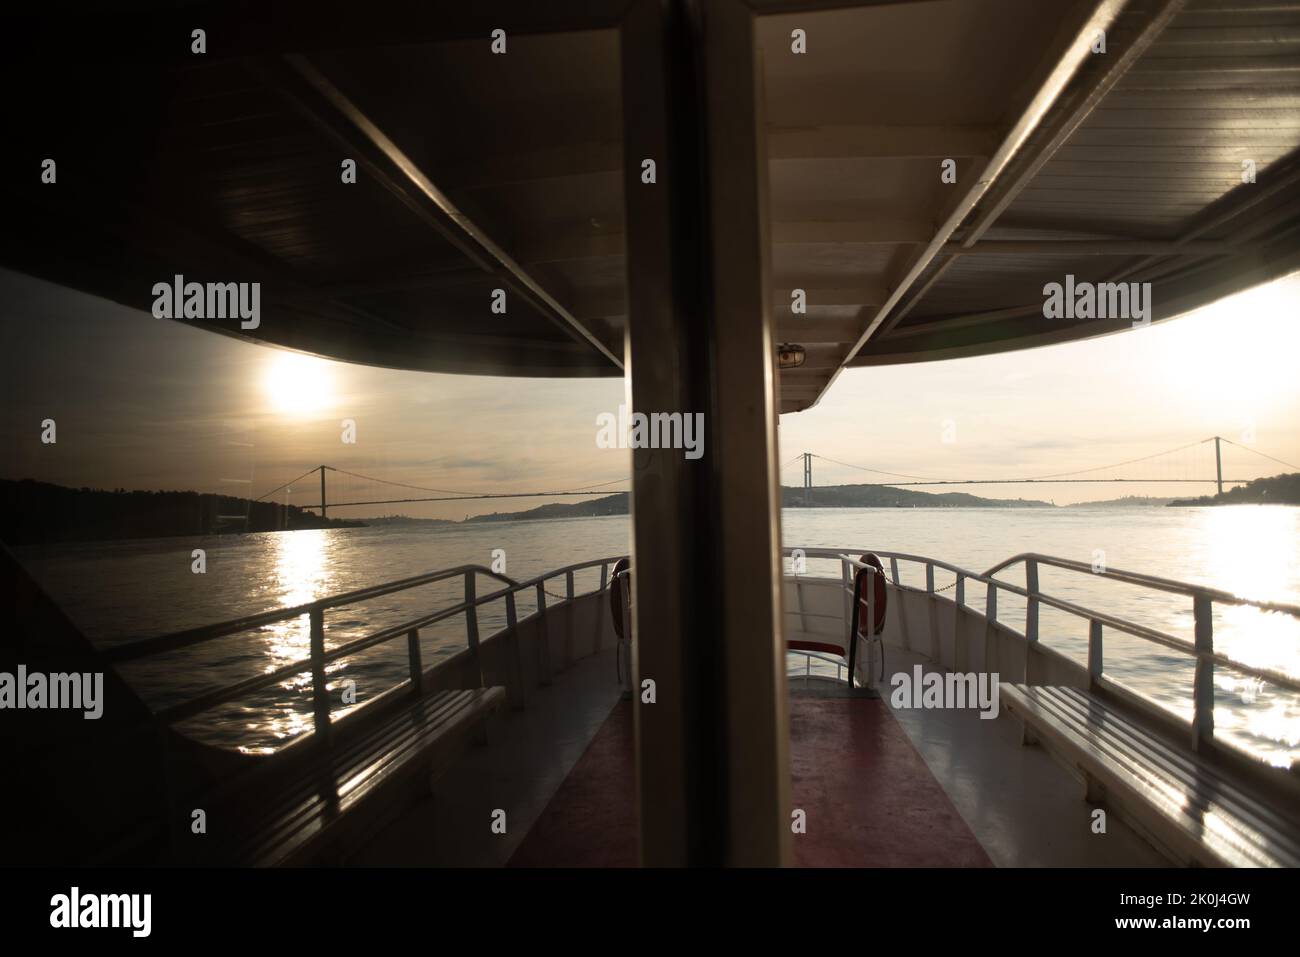 paisajes de viaje , reflexión sobre el barco al atardecer Foto de stock